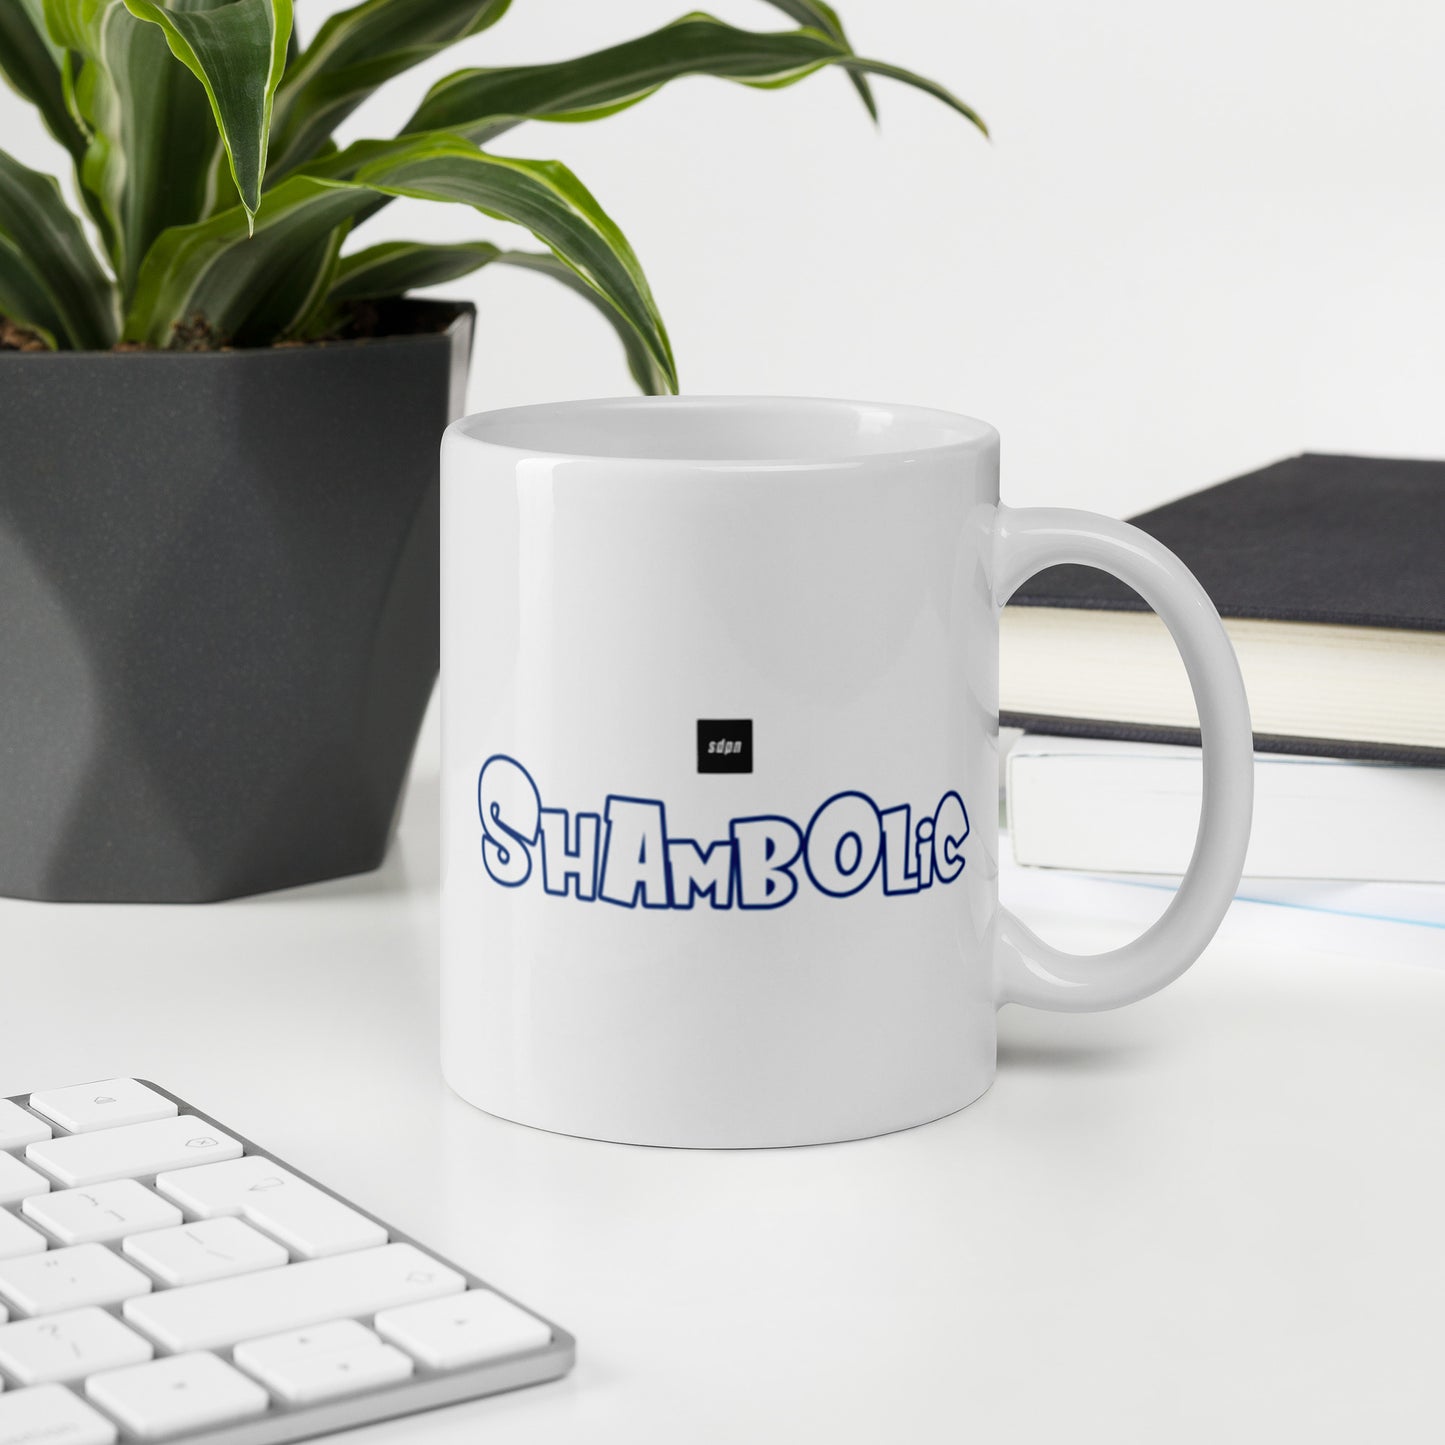 Steve Dangle "Shambolic" Mug